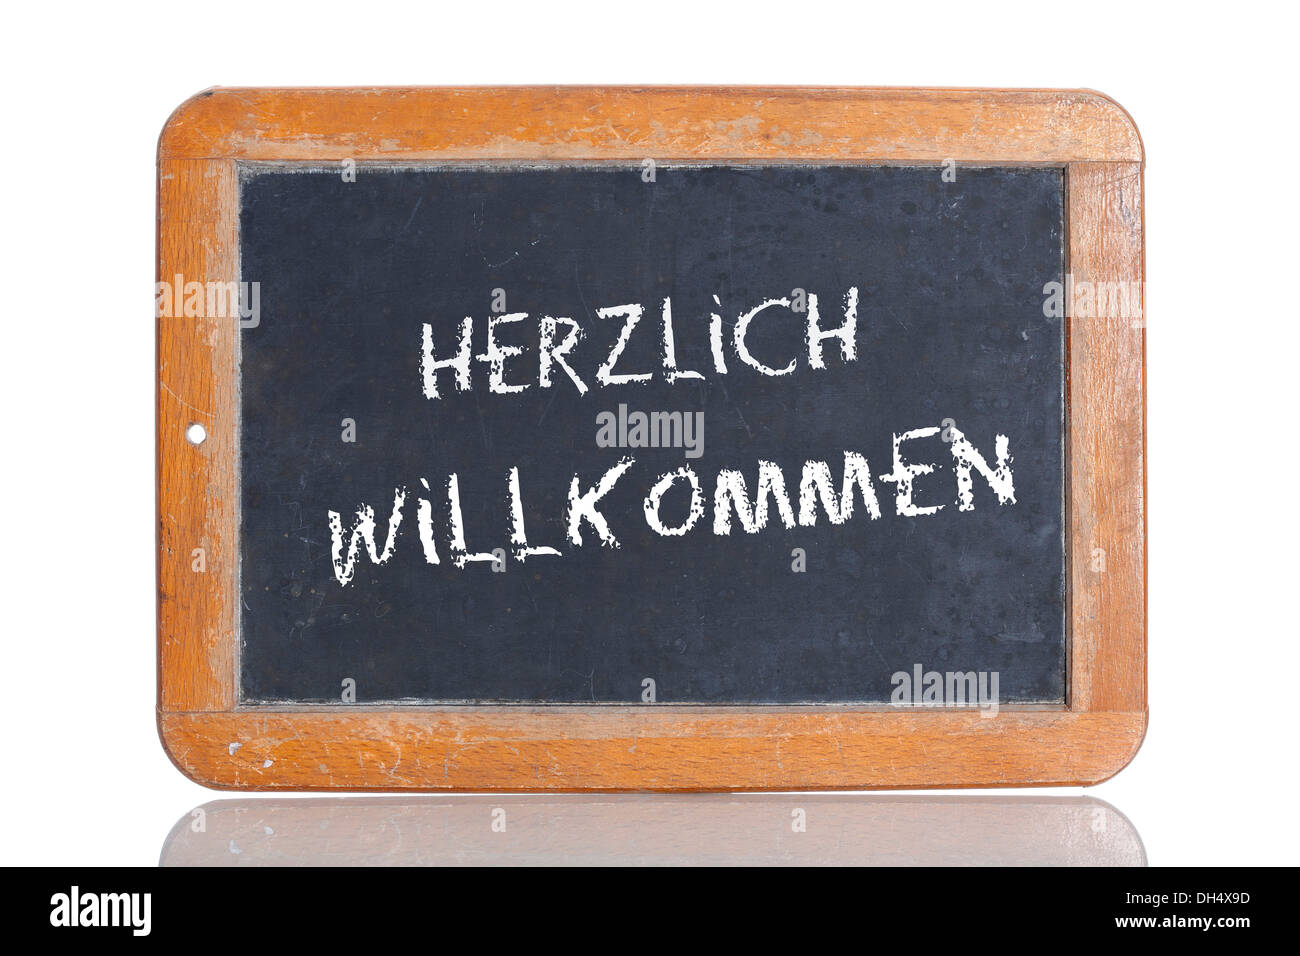 Old chalkboard, lettering 'HERZLICH WILLKOMMEN', German for 'WELCOME' Stock Photo